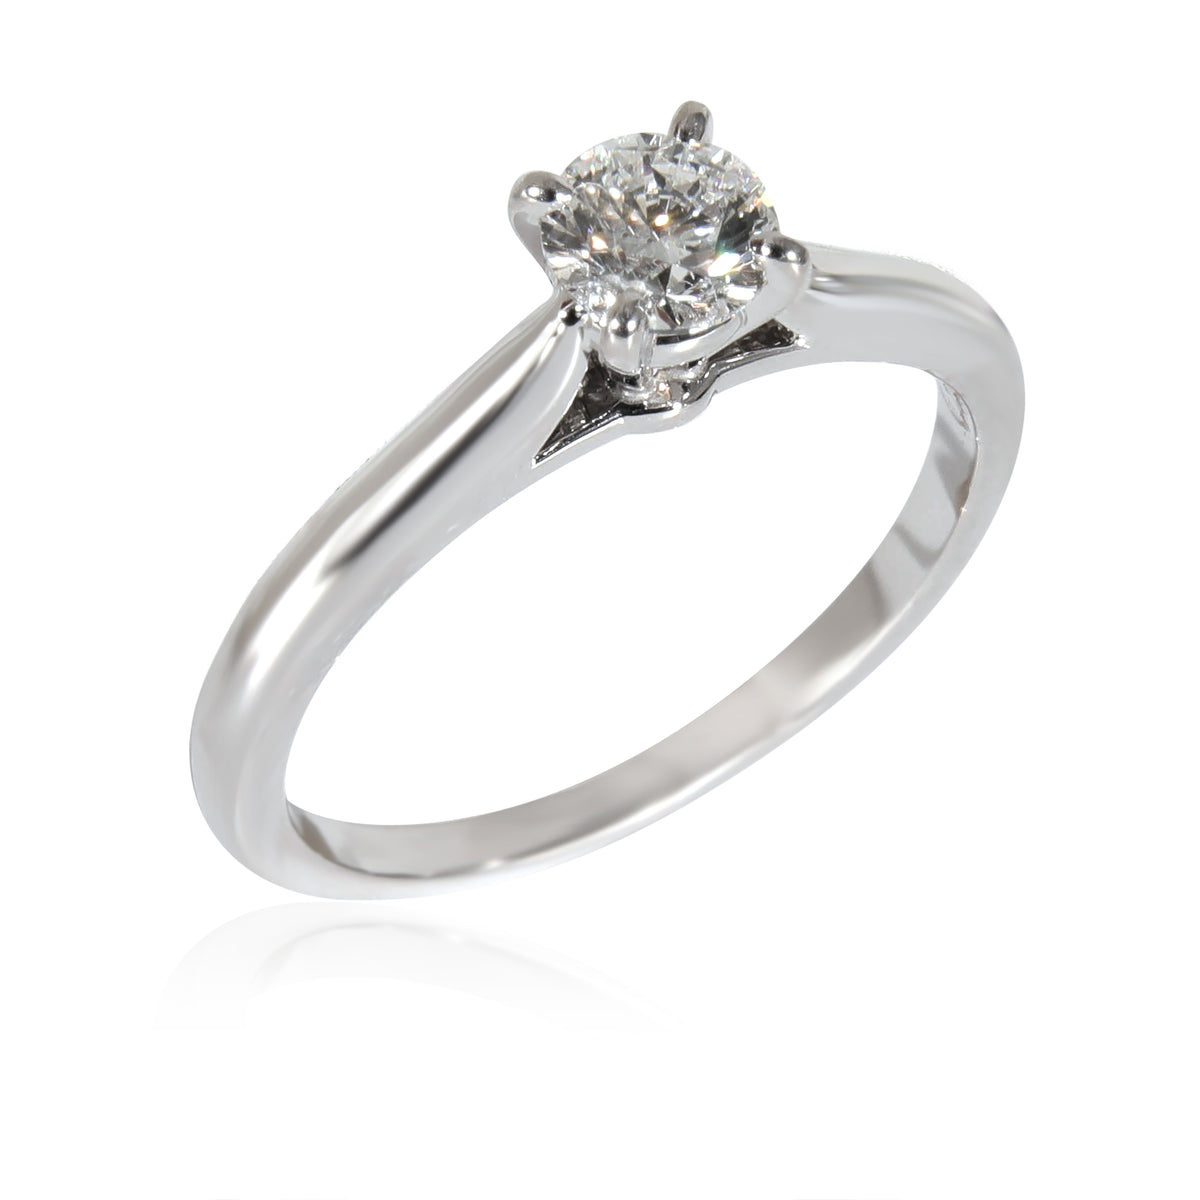 Solitaire 1895 Engagement Ring (Platinum)